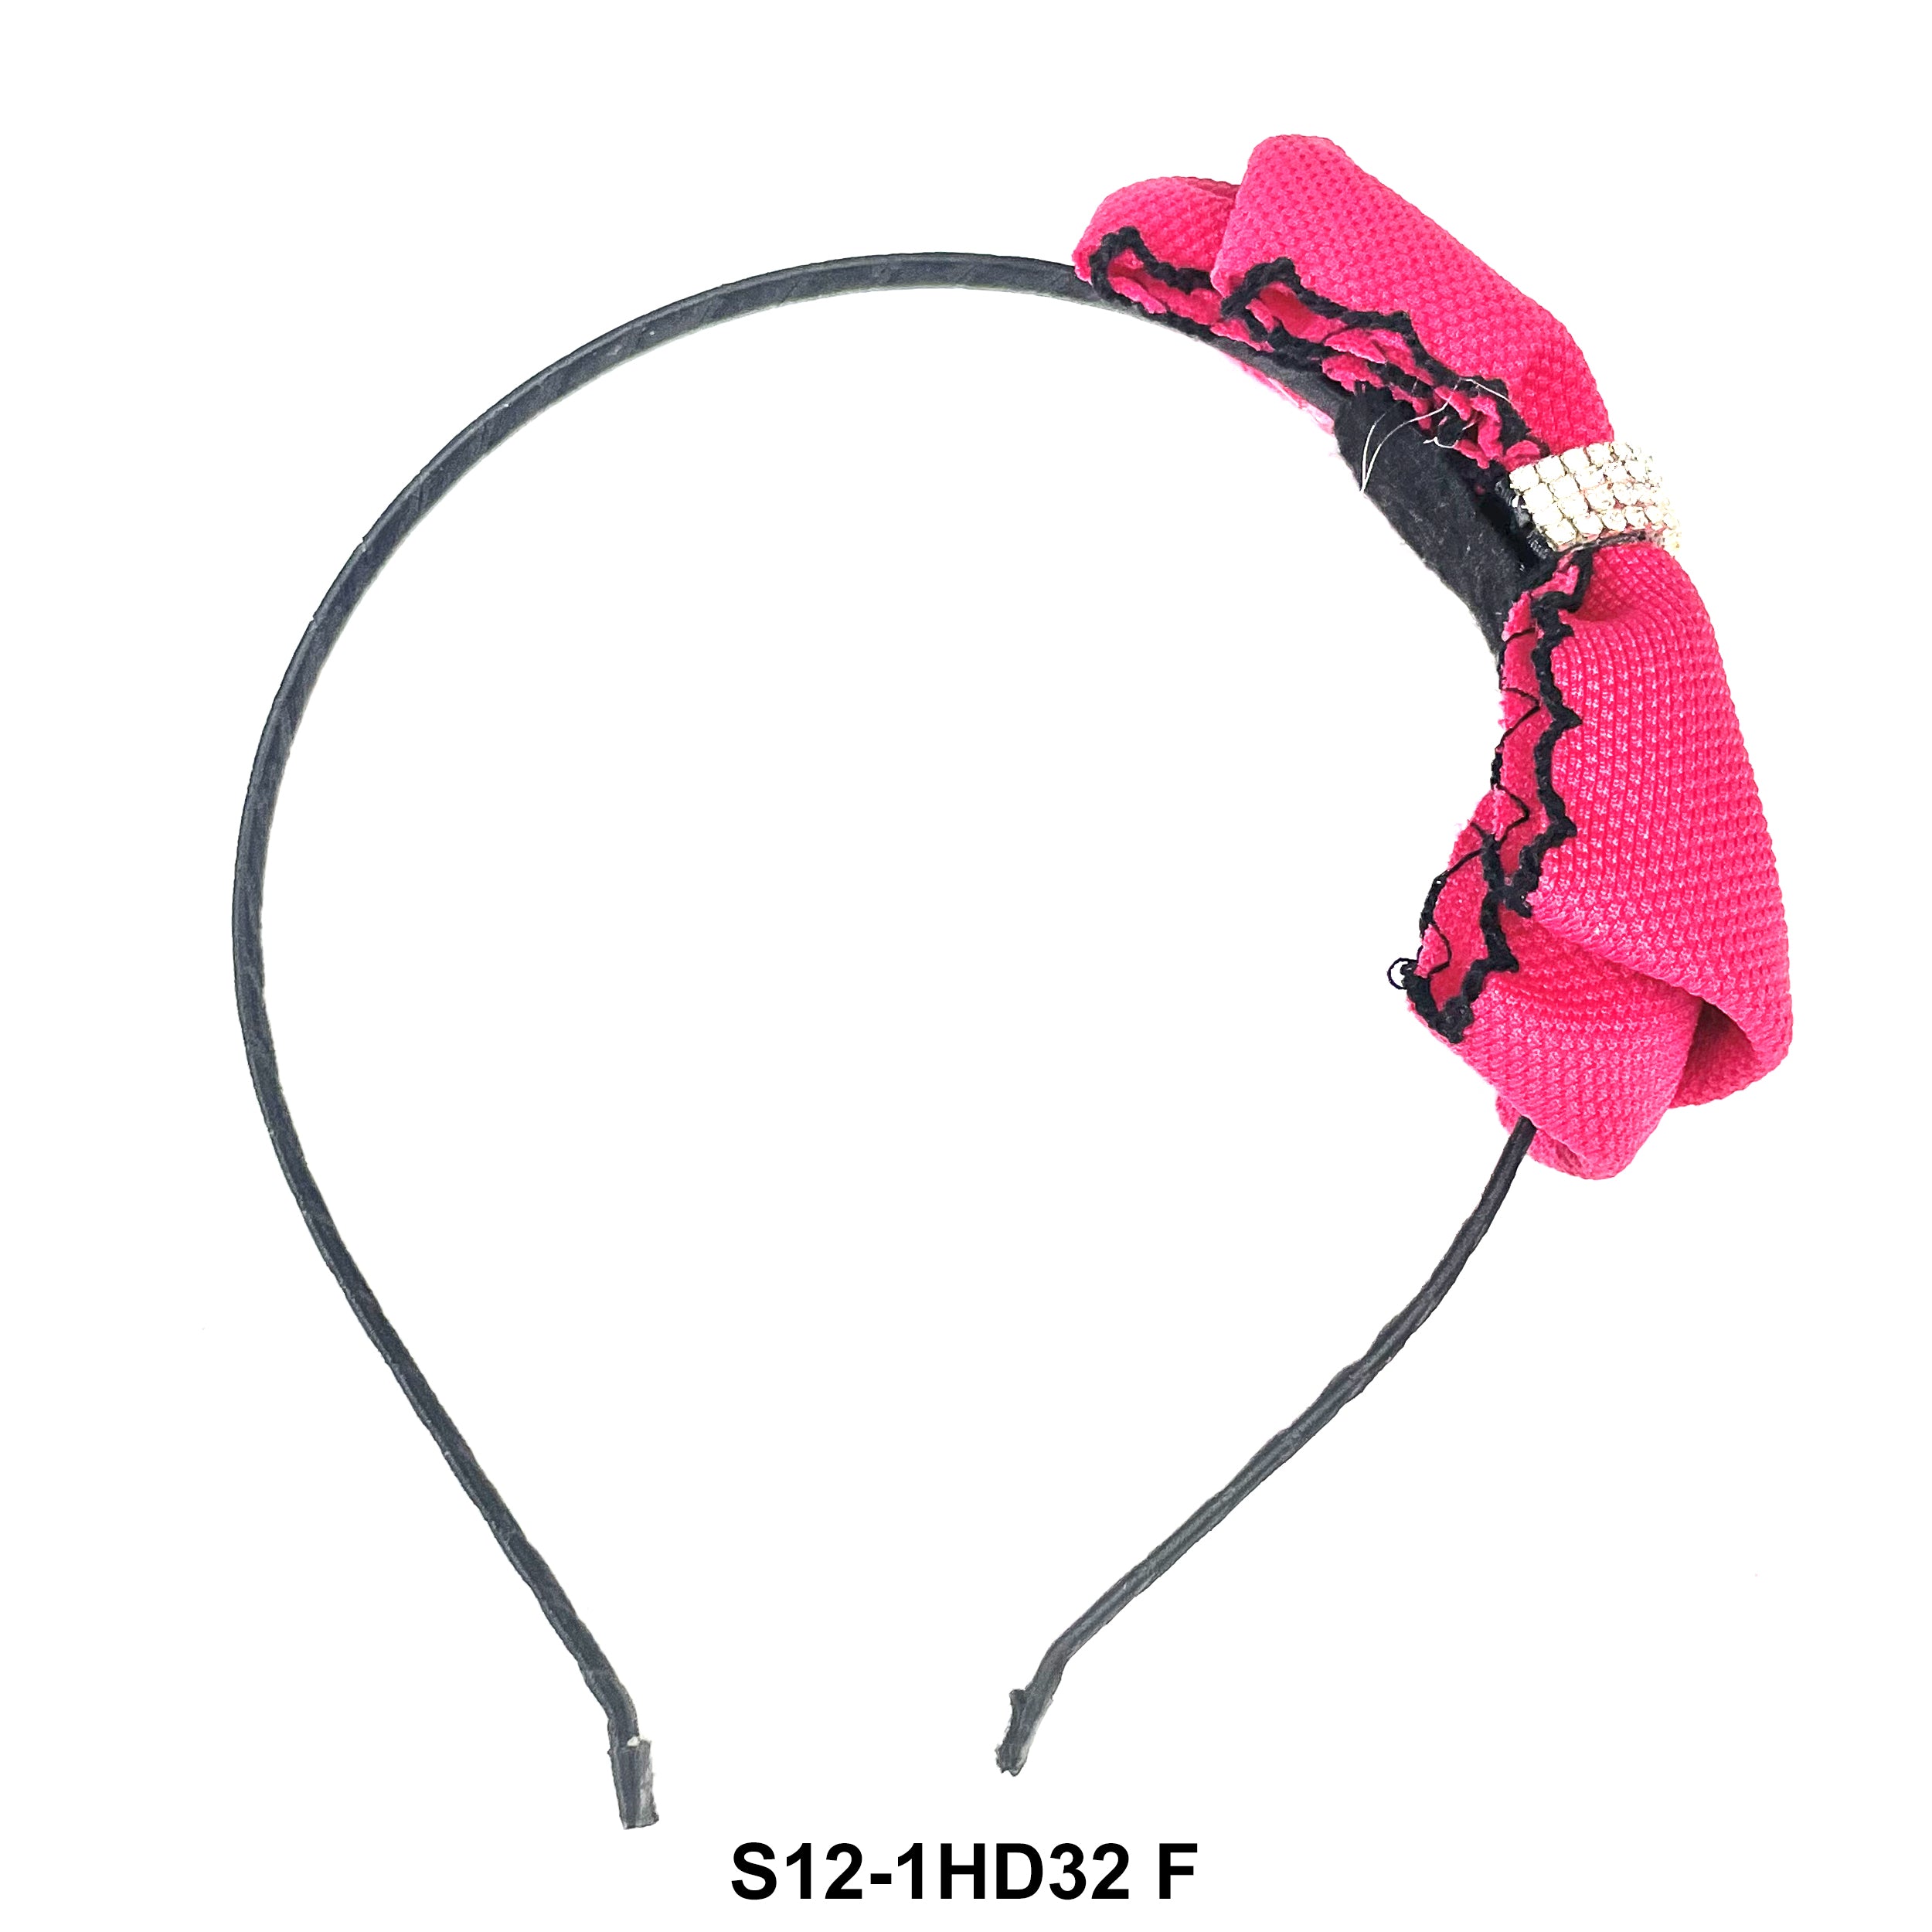 Fashion Headbands S12-1HD32 F